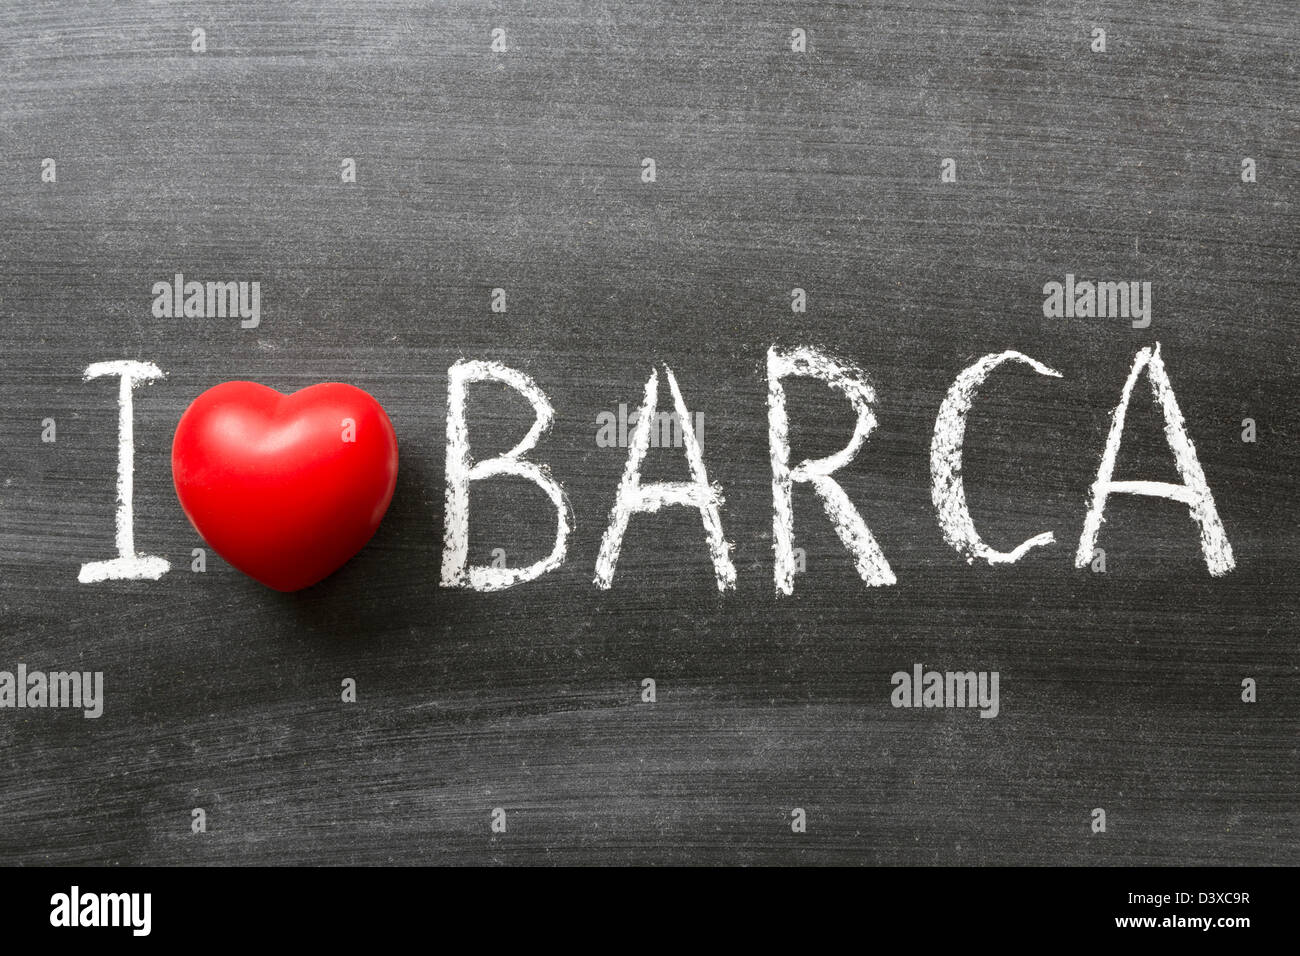 J'adore la phrase Barca à la main sur le tableau noir de l'école Banque D'Images